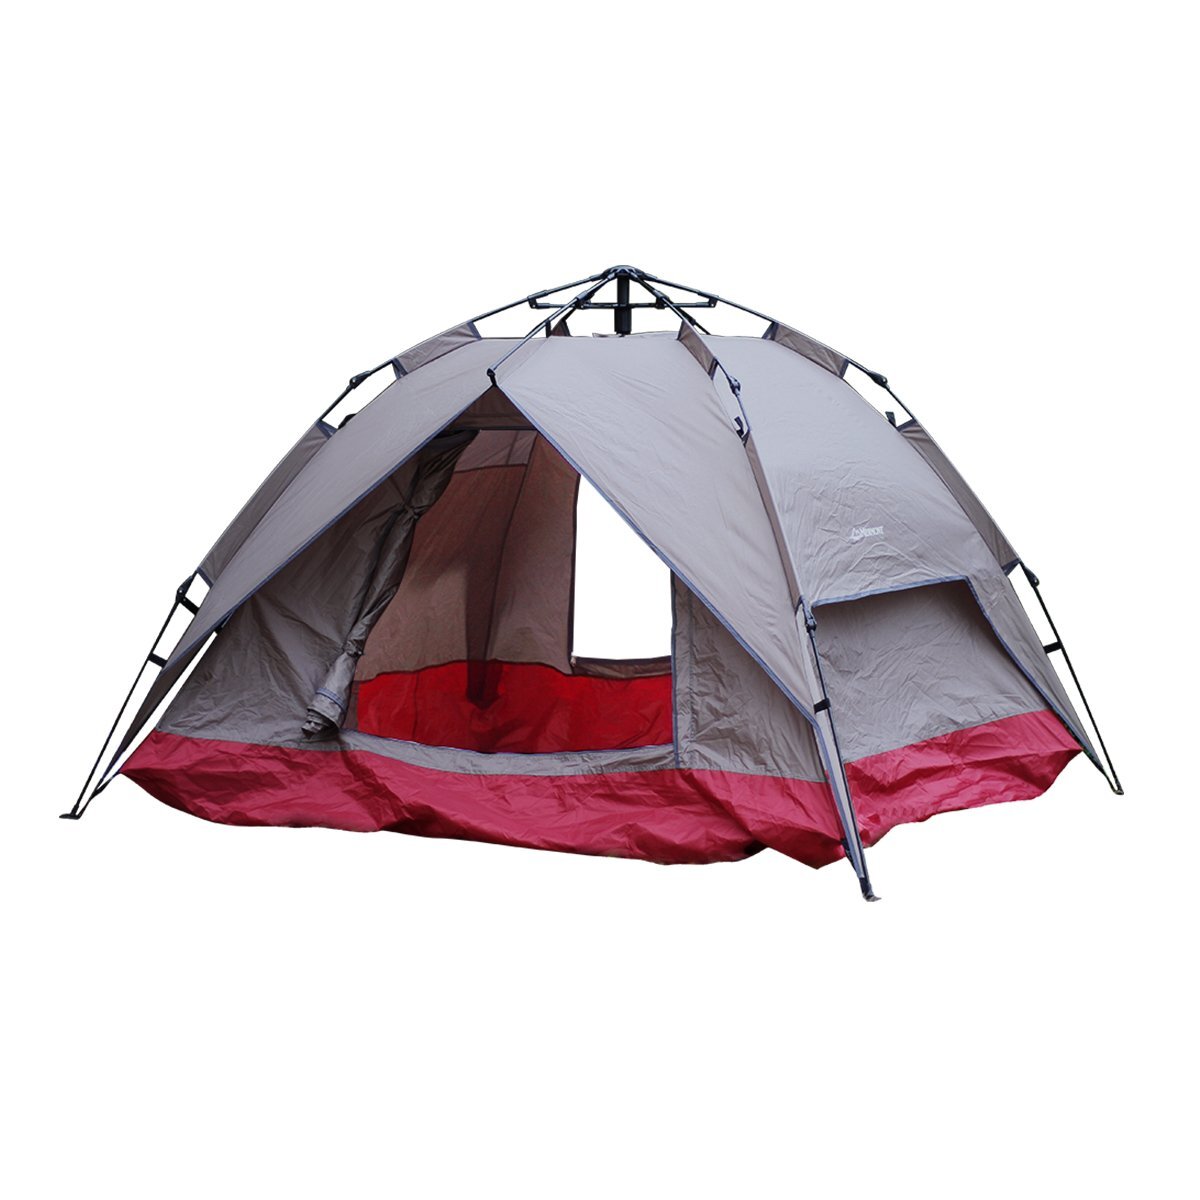 テント ポップアップテント ワンタッチテント 4人 アウトドア キャンプ用品 2WAY ソロテント ツーリング 防水 サンシェード ドーム型テント_画像1